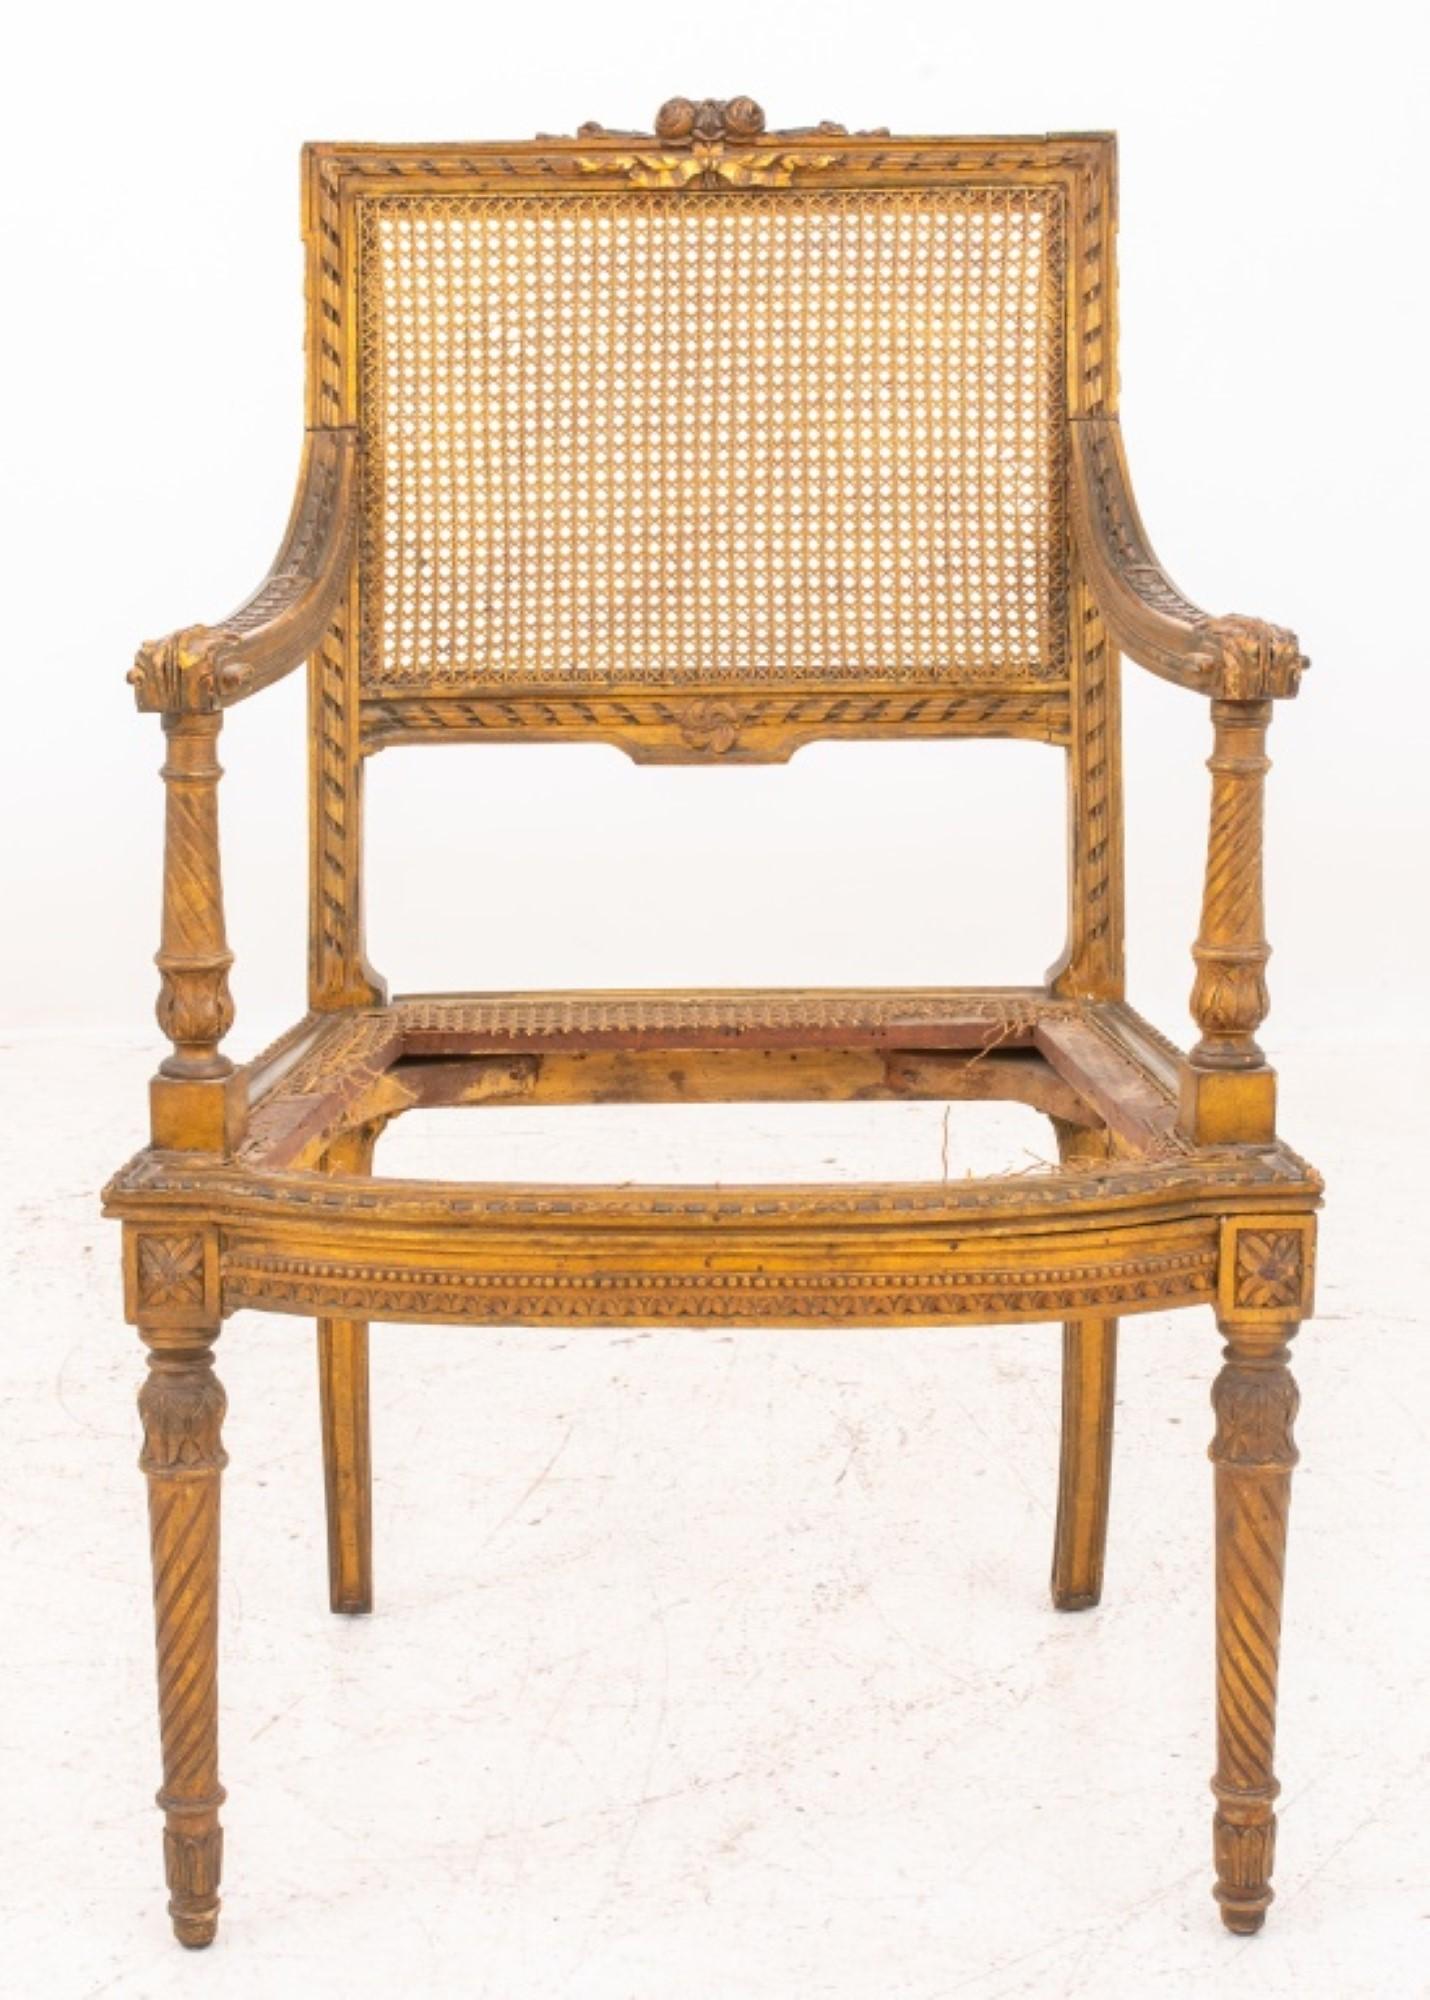 Fauteuil de style Louis XVI en bois sculpté et doré  Pieds fuselés tournés, dossier et assise.  cannage, cannage de siège en état de détresse,  Vers la fin du XIXe siècle. 

Concessionnaire : S138XX